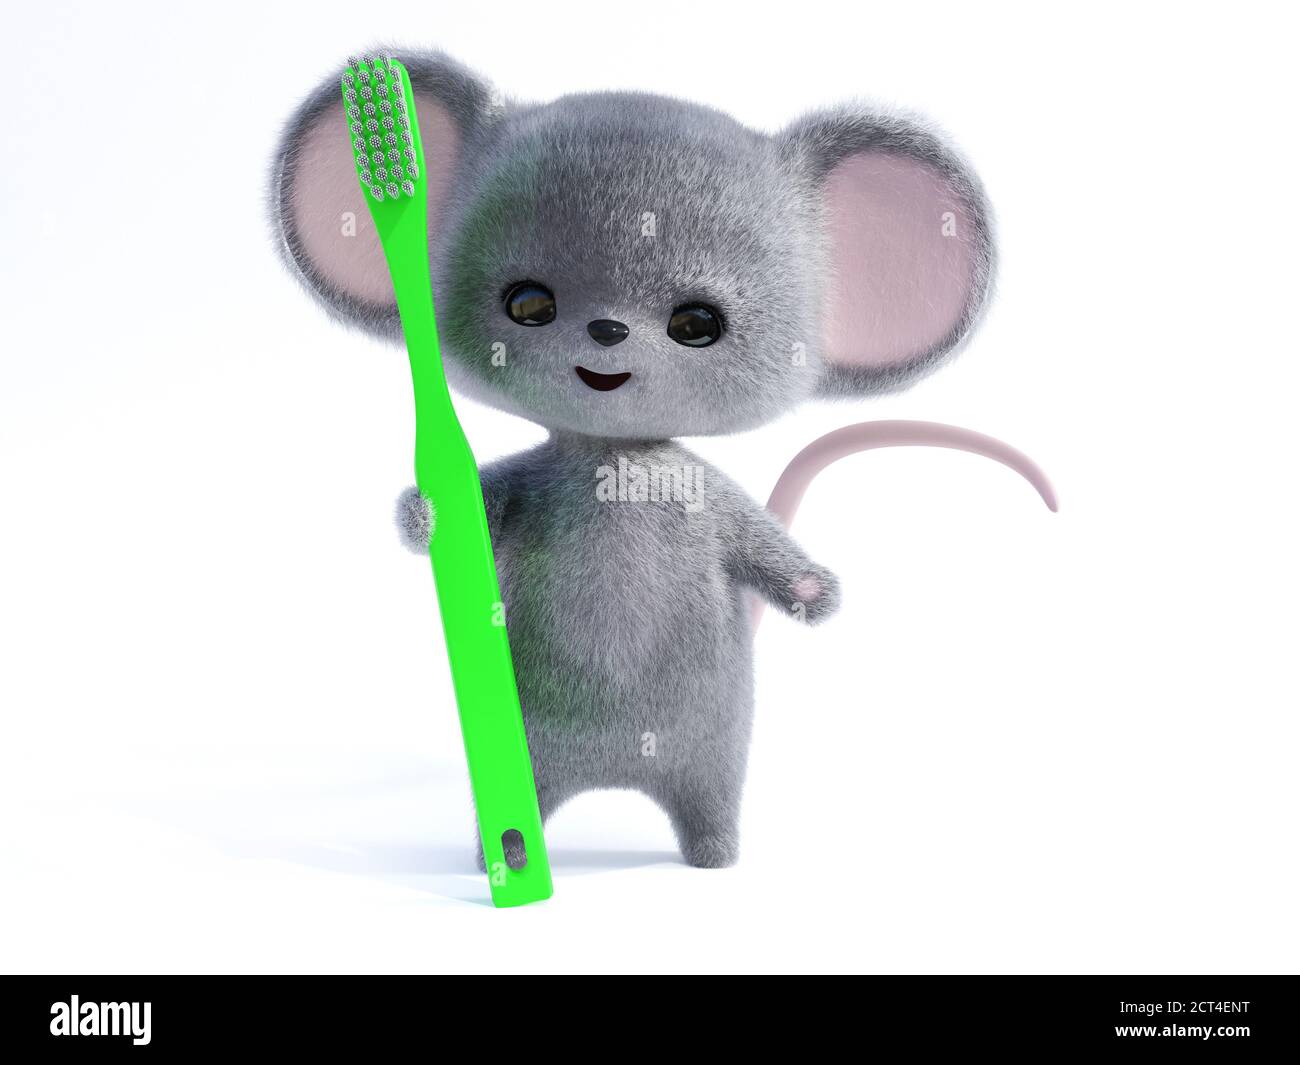 Rendu 3D d'une adorable souris à fourrure kawaii souriante tenant une brosse à dents verte très grande. Prêt à brosser les dents ! Arrière-plan blanc. Banque D'Images